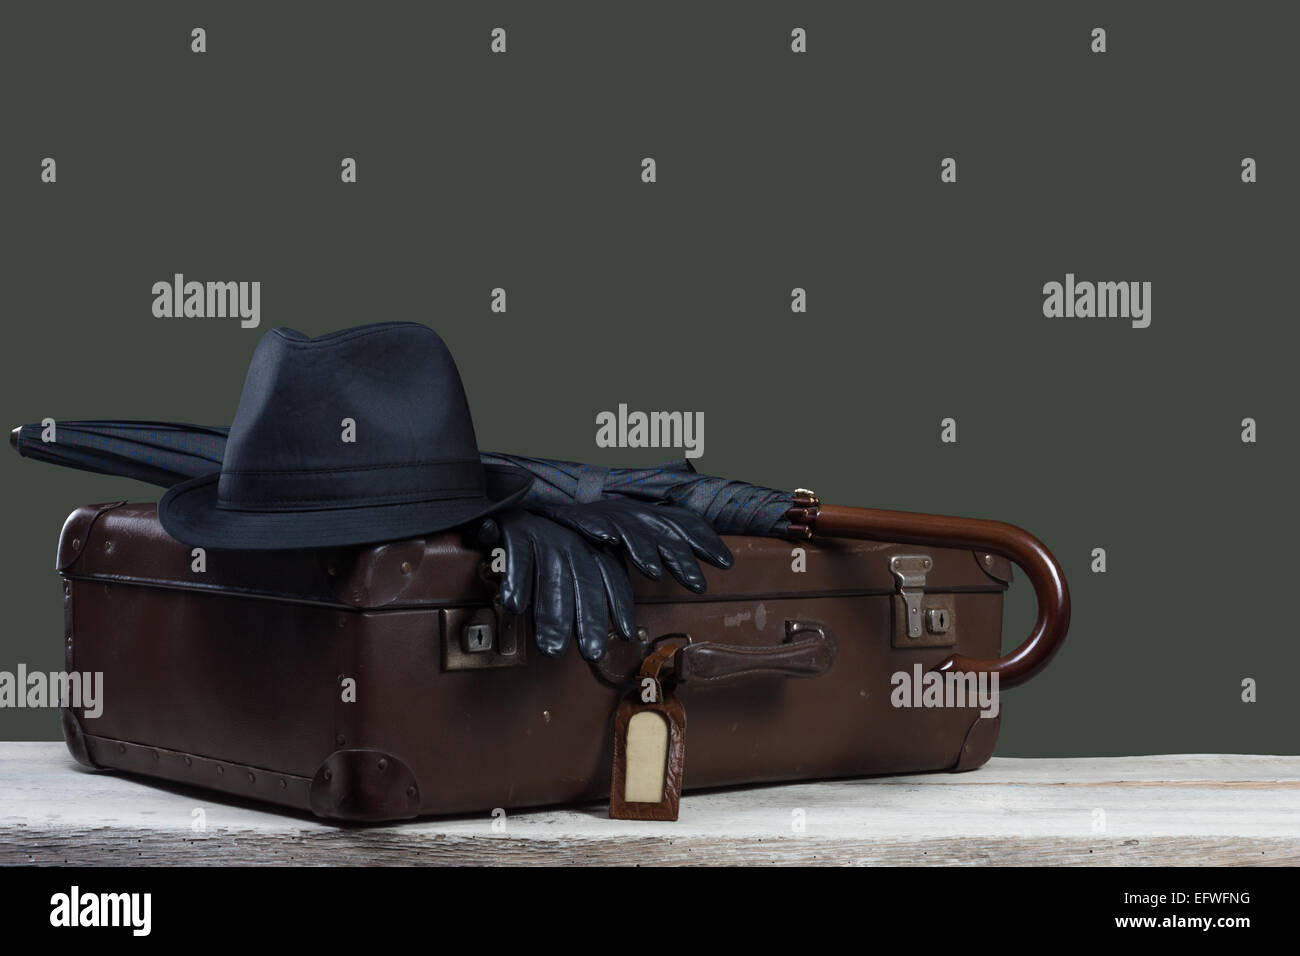 Ombrello valigia immagini e fotografie stock ad alta risoluzione - Alamy